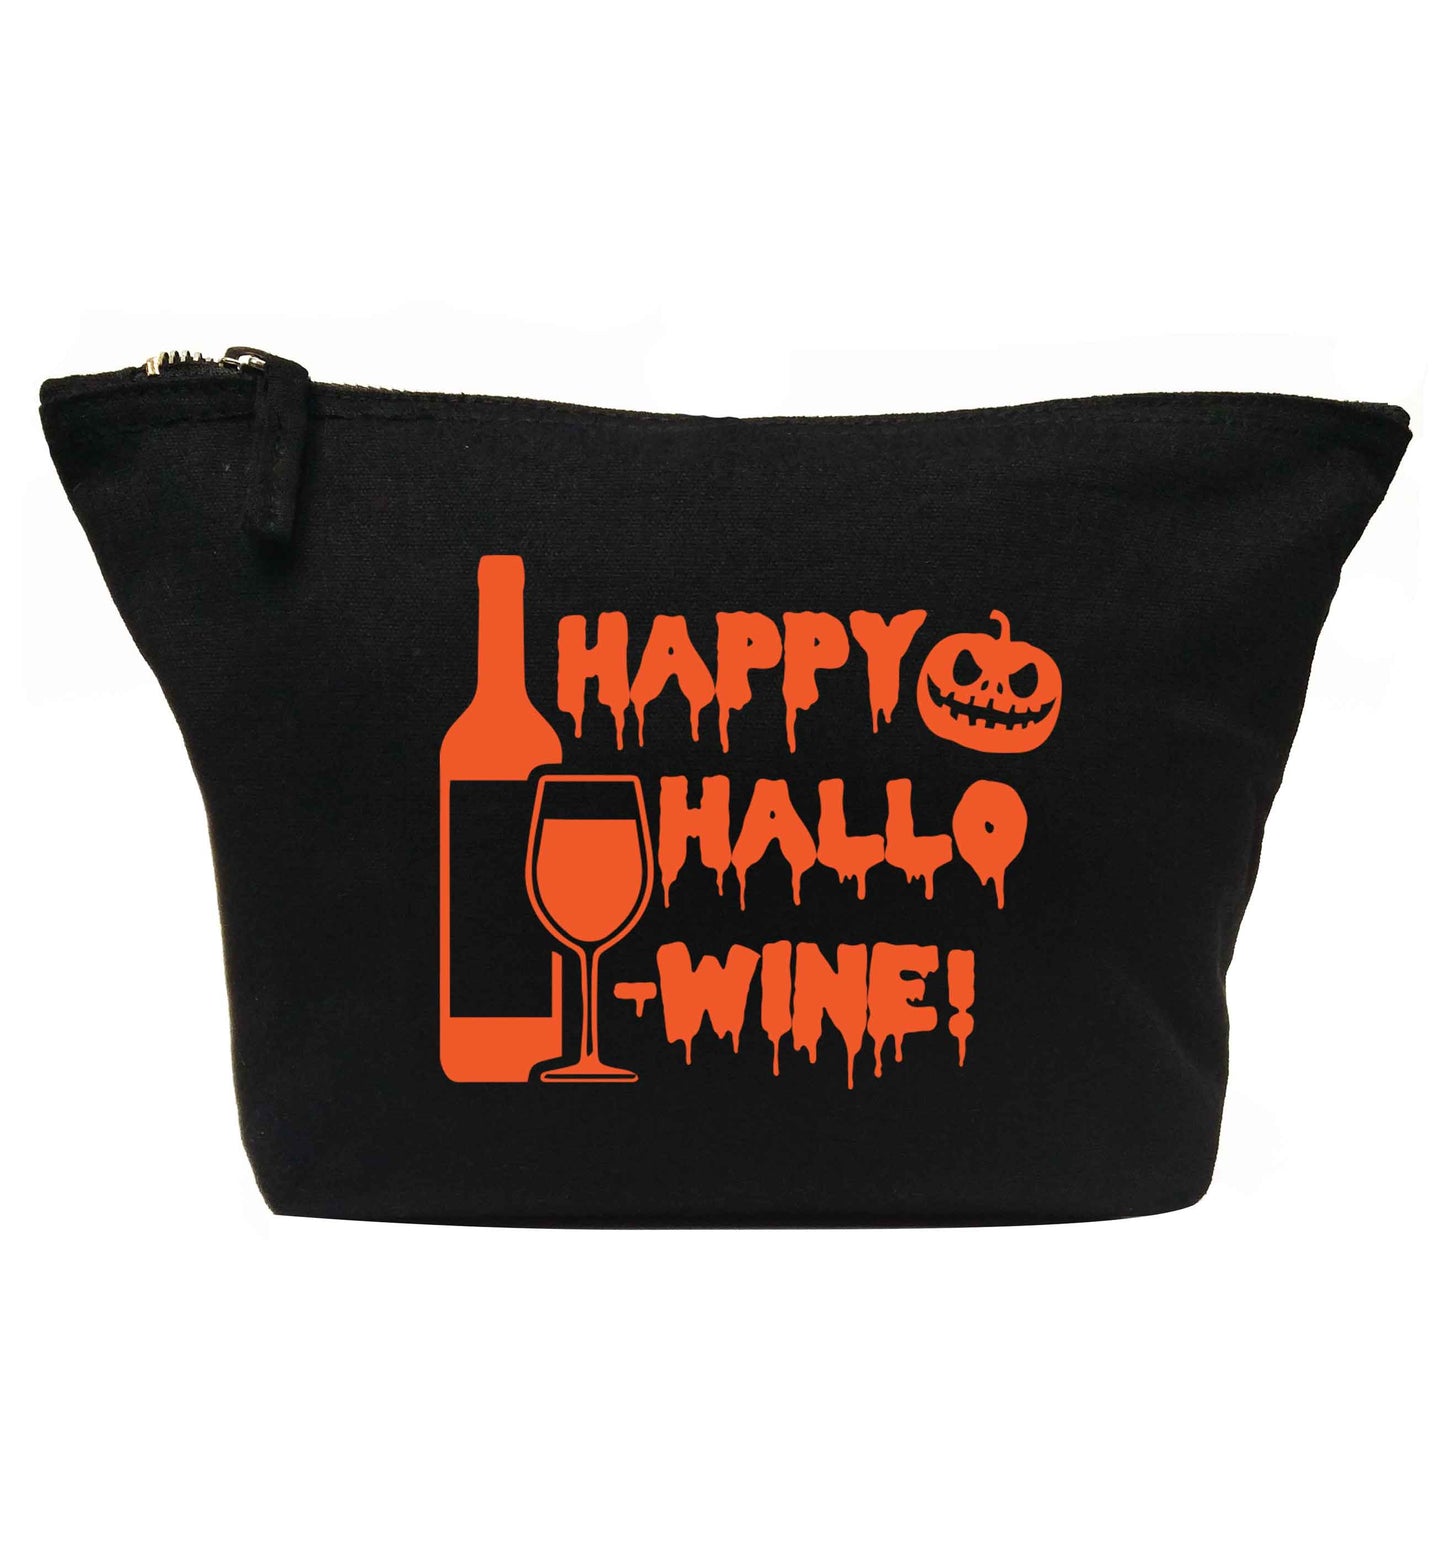 Happy hallow-wine | makeup / wash bag